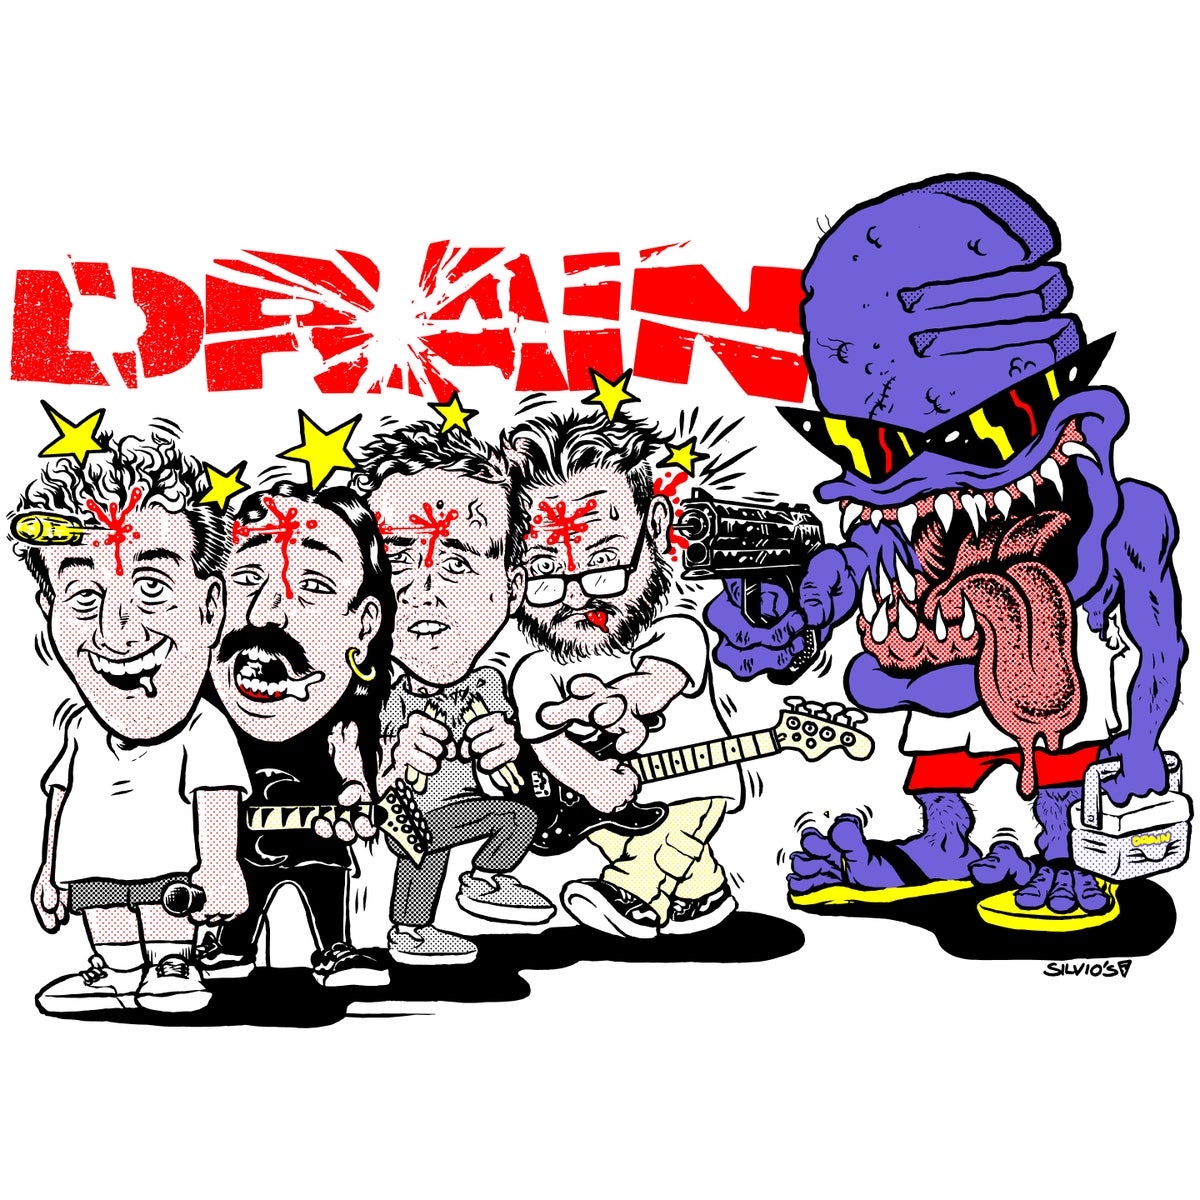 Full Album Stream: Rat King - Vicious Inhumanity - Decibel Magazine